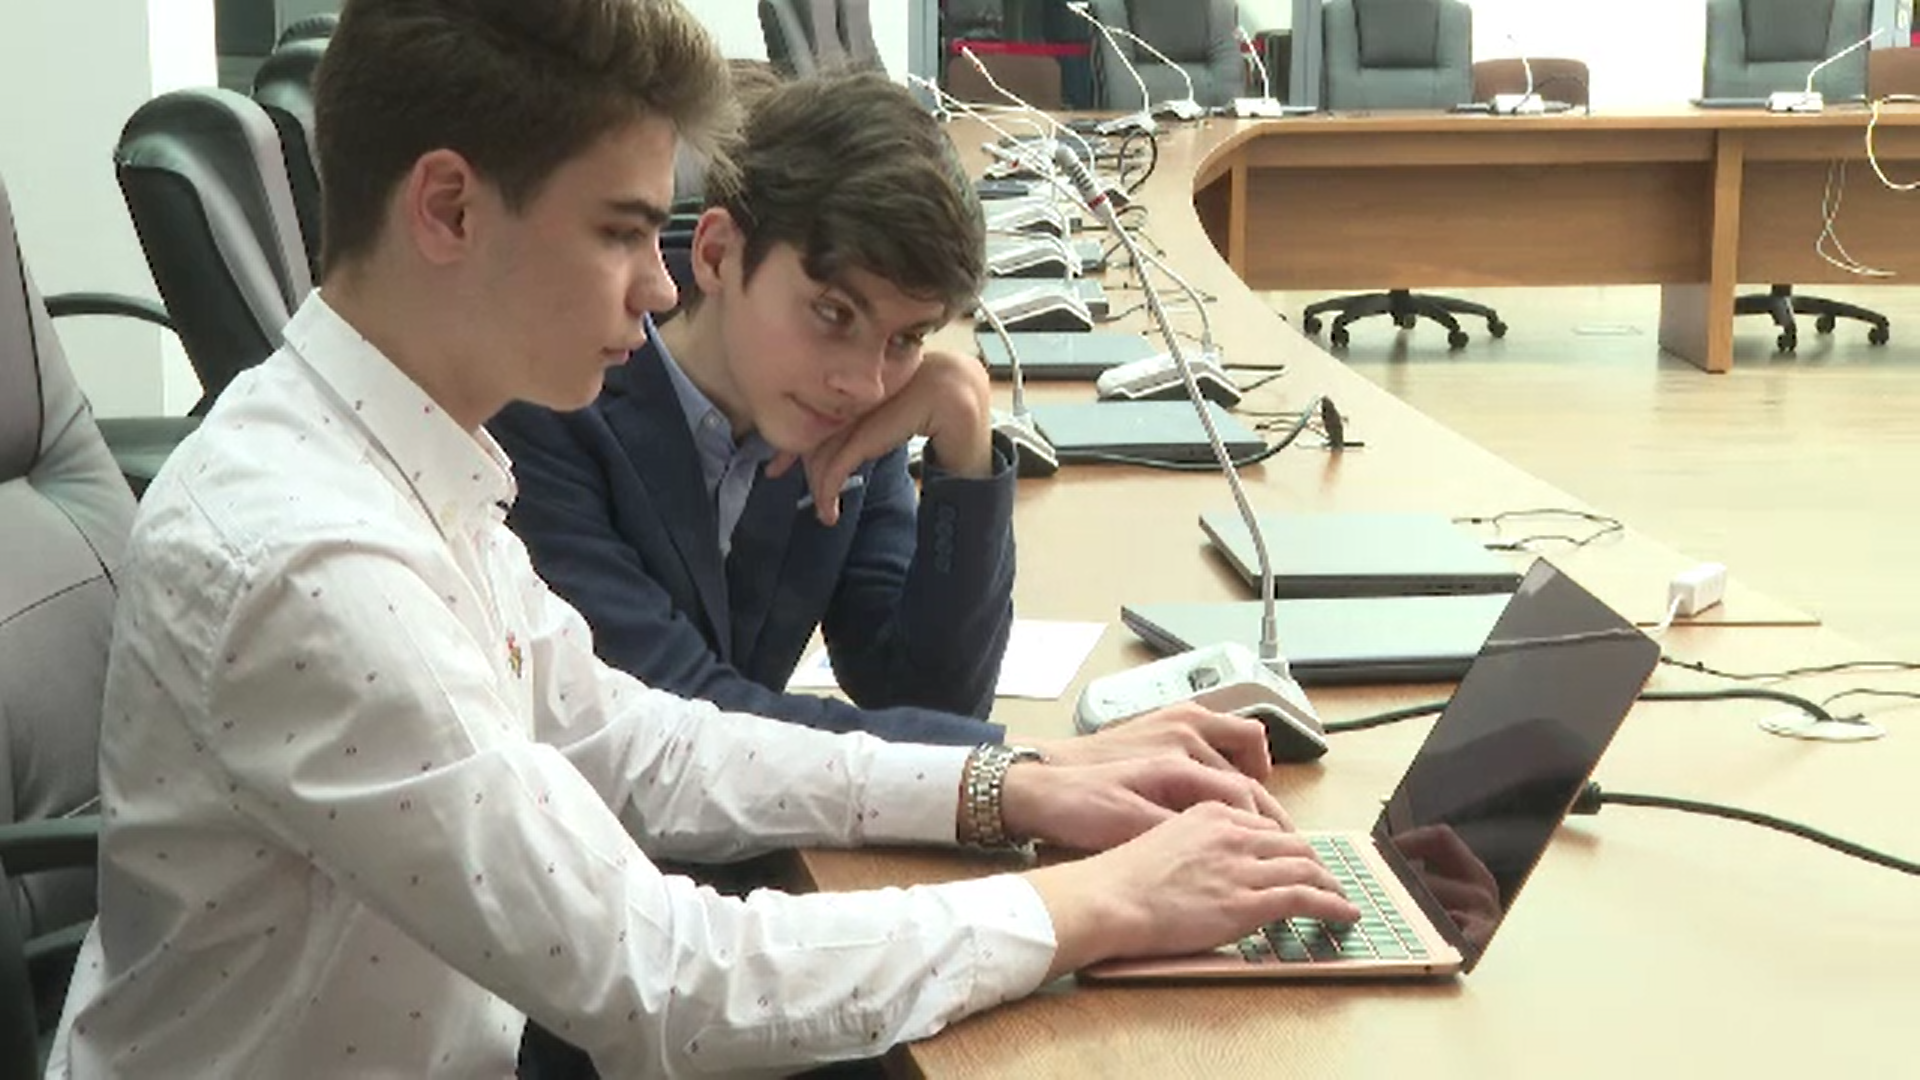 Doi elevi din Galati au creat o aplicatie de înregistrare a reclamațiilor către instituțiile locale